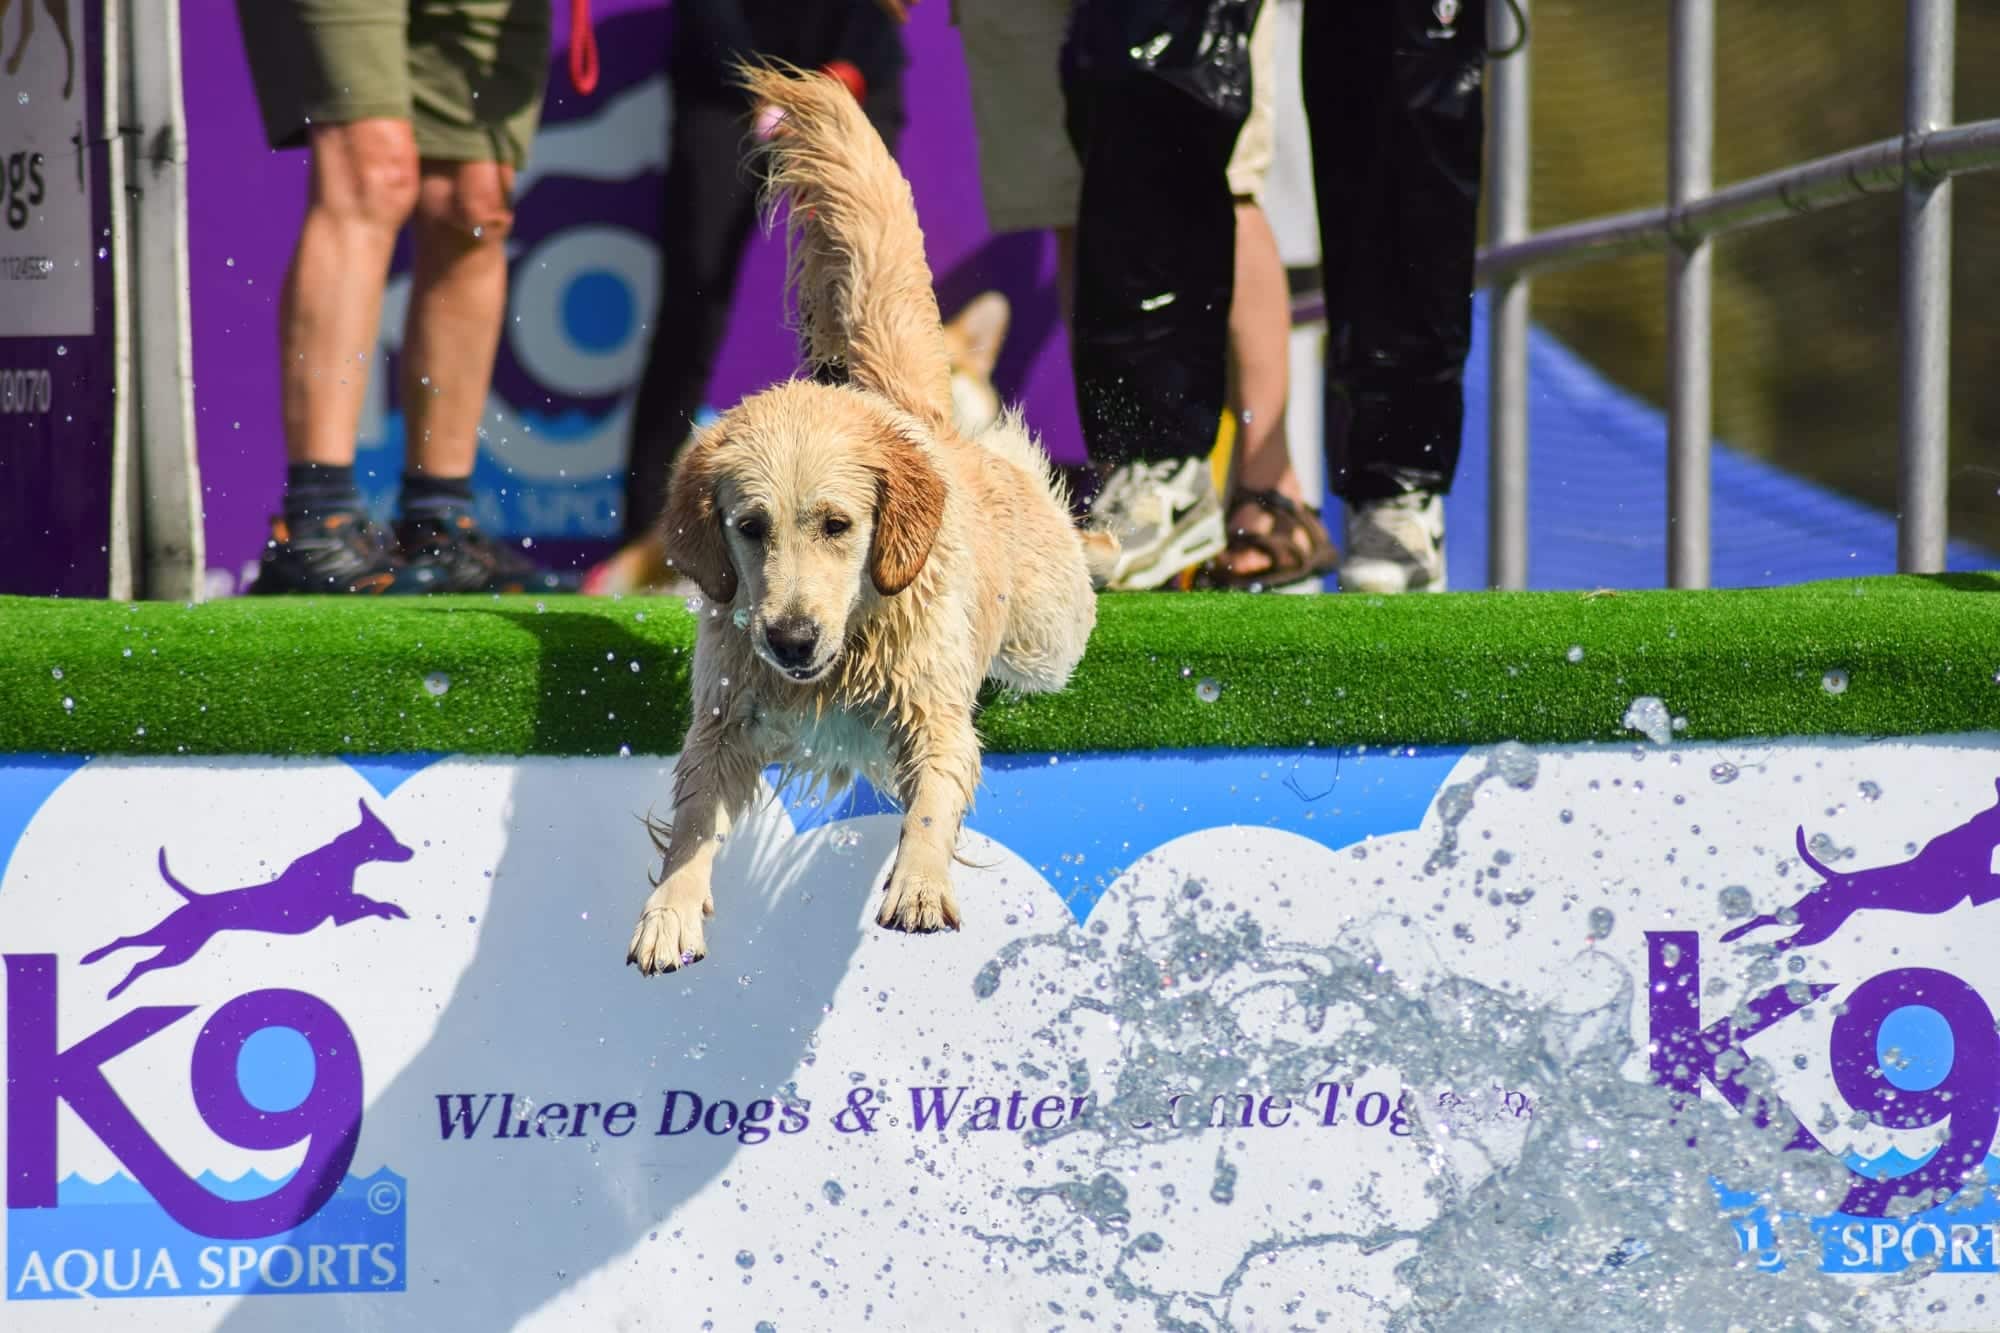 Dog on a water slide, dog festival